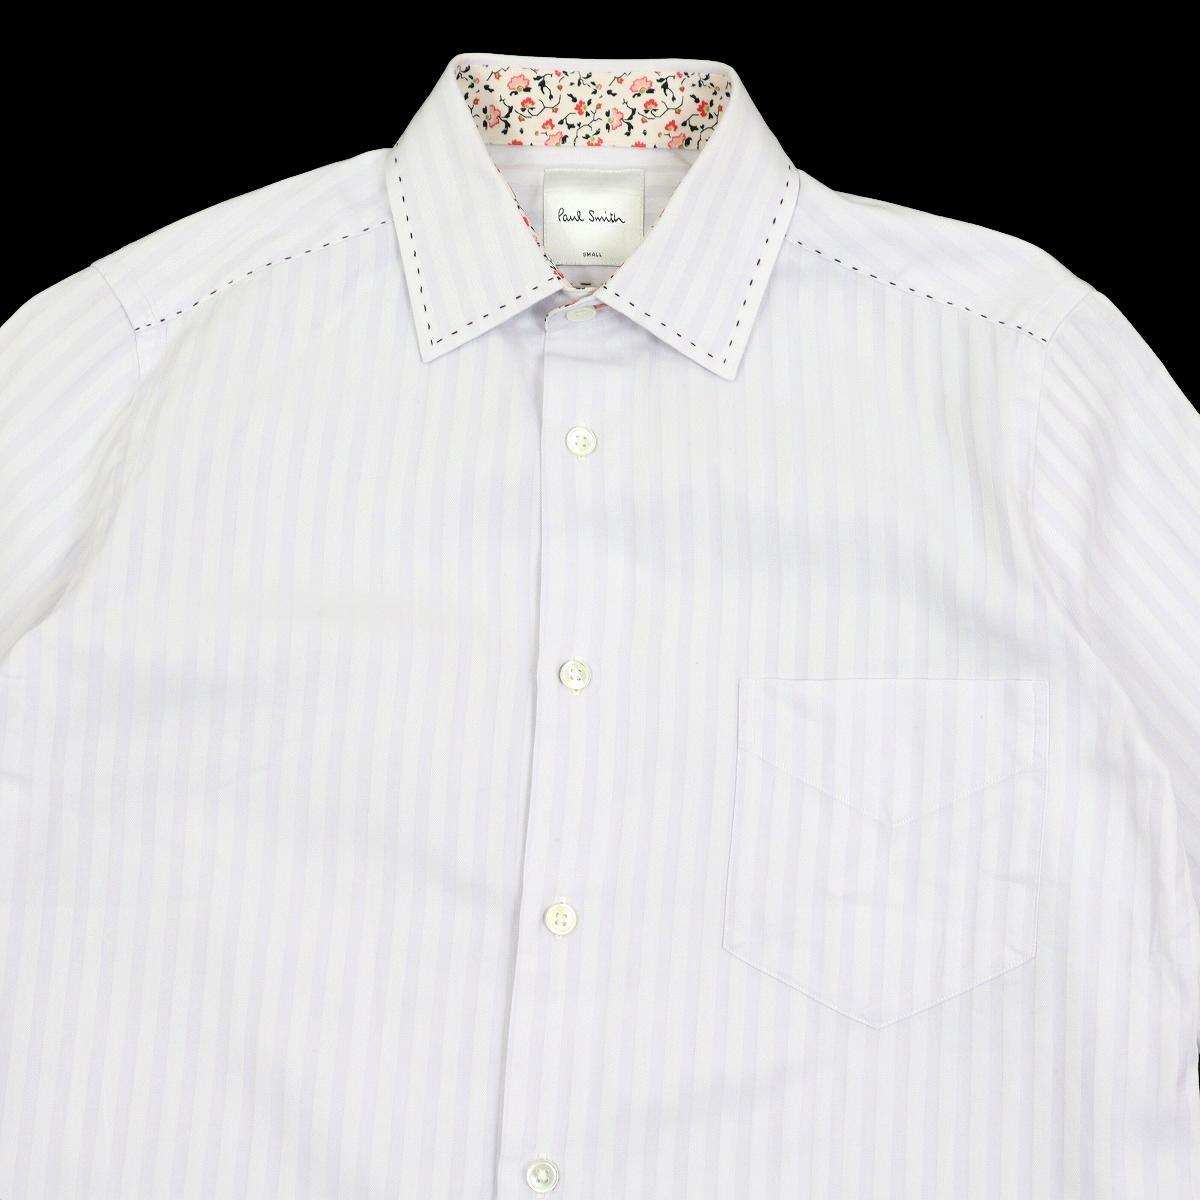 [ превосходный товар ]Paul Smith Paul Smith рубашка с длинным рукавом сорочка цветочный принт полоса размер S